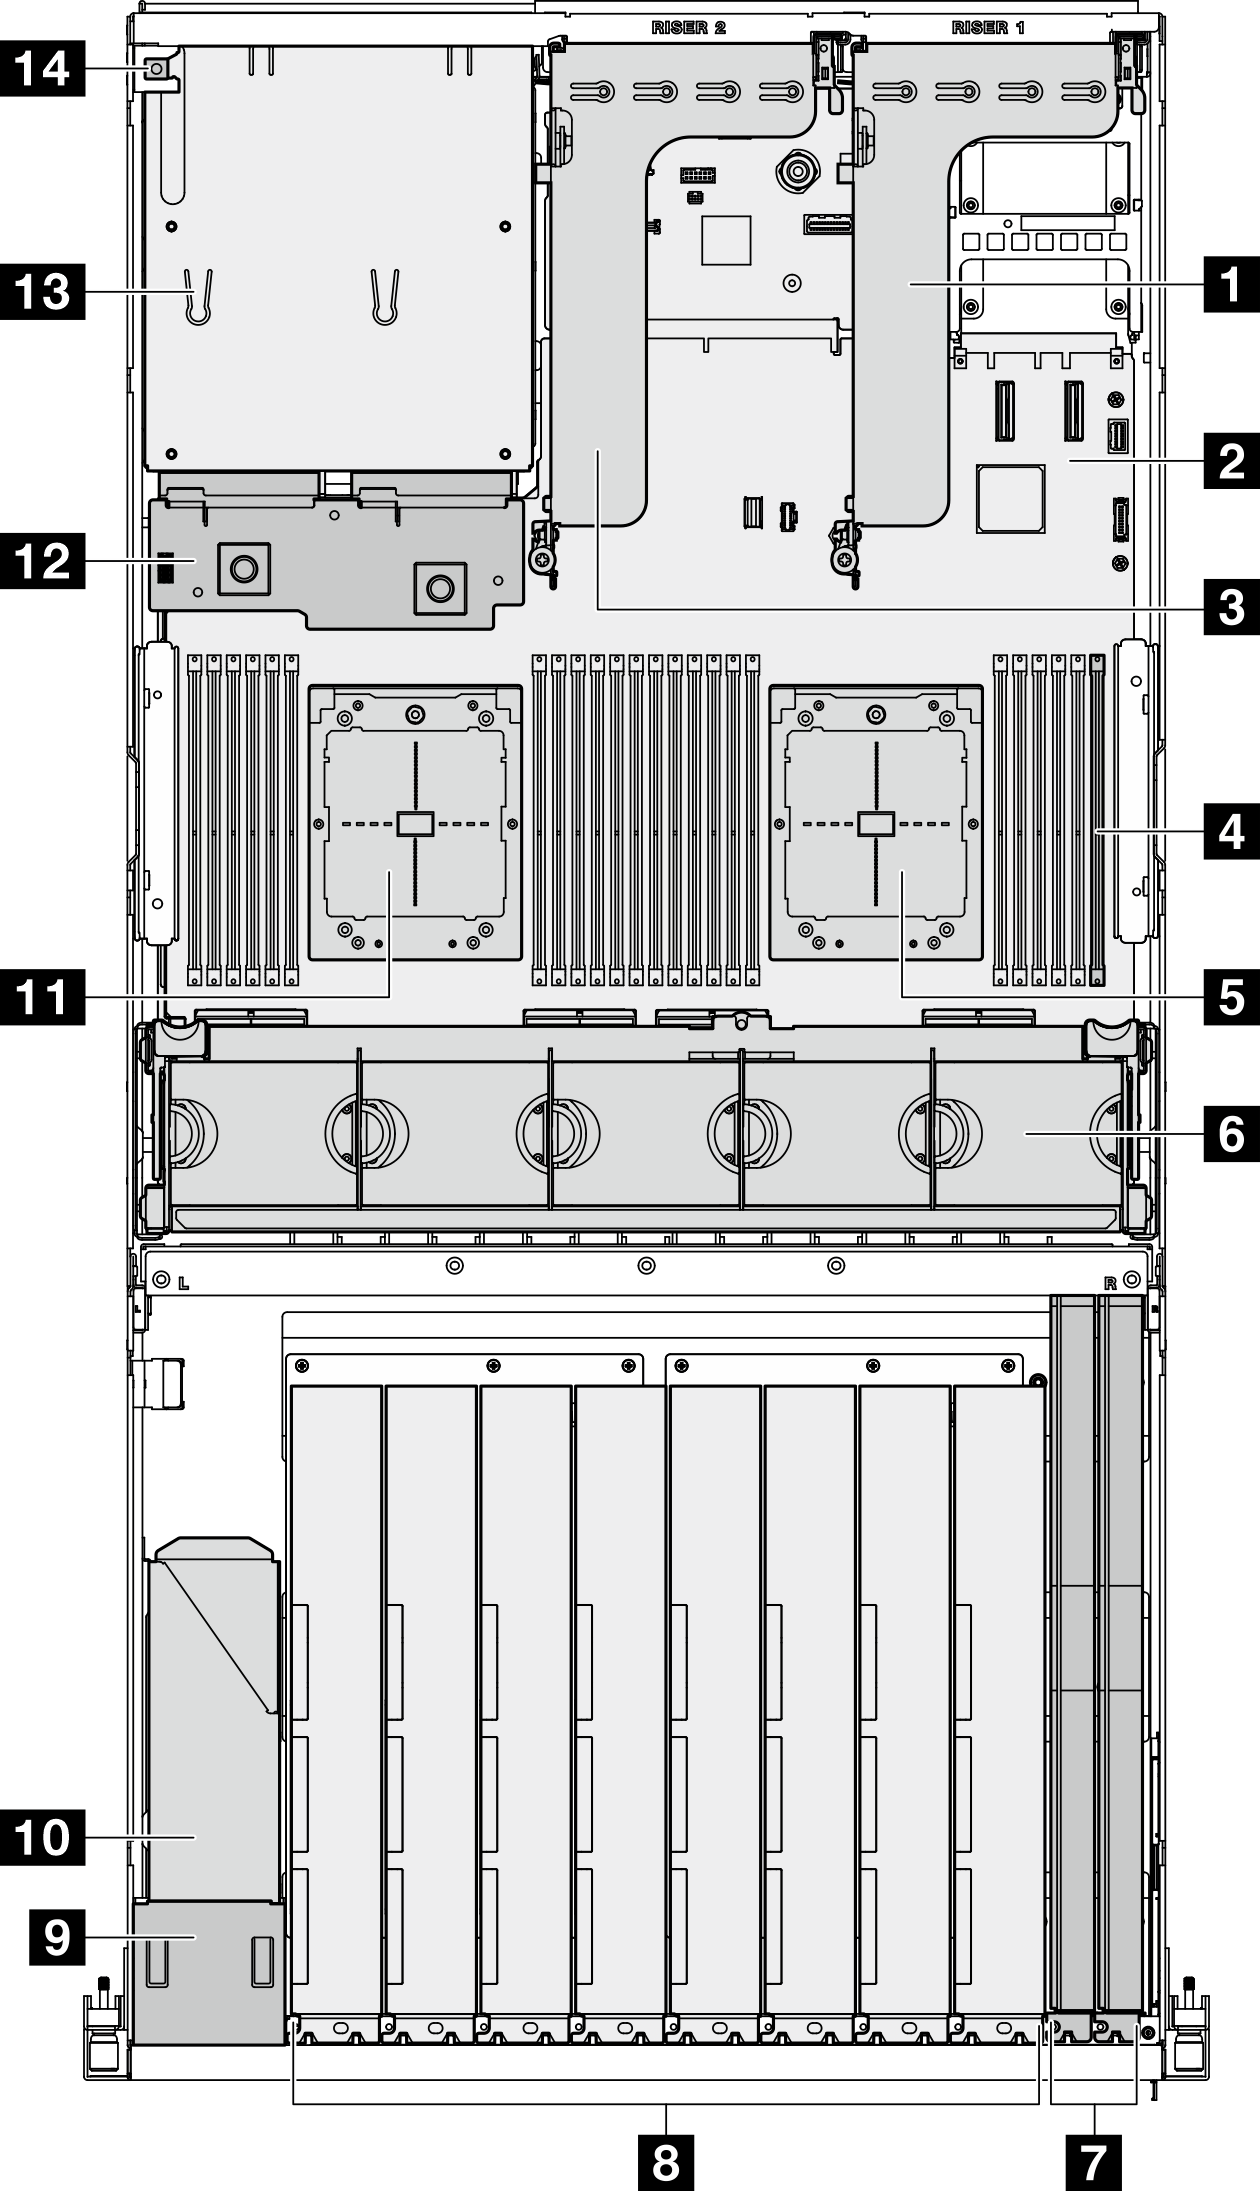 Top view of the Модели с графическими процессорами 8-DW